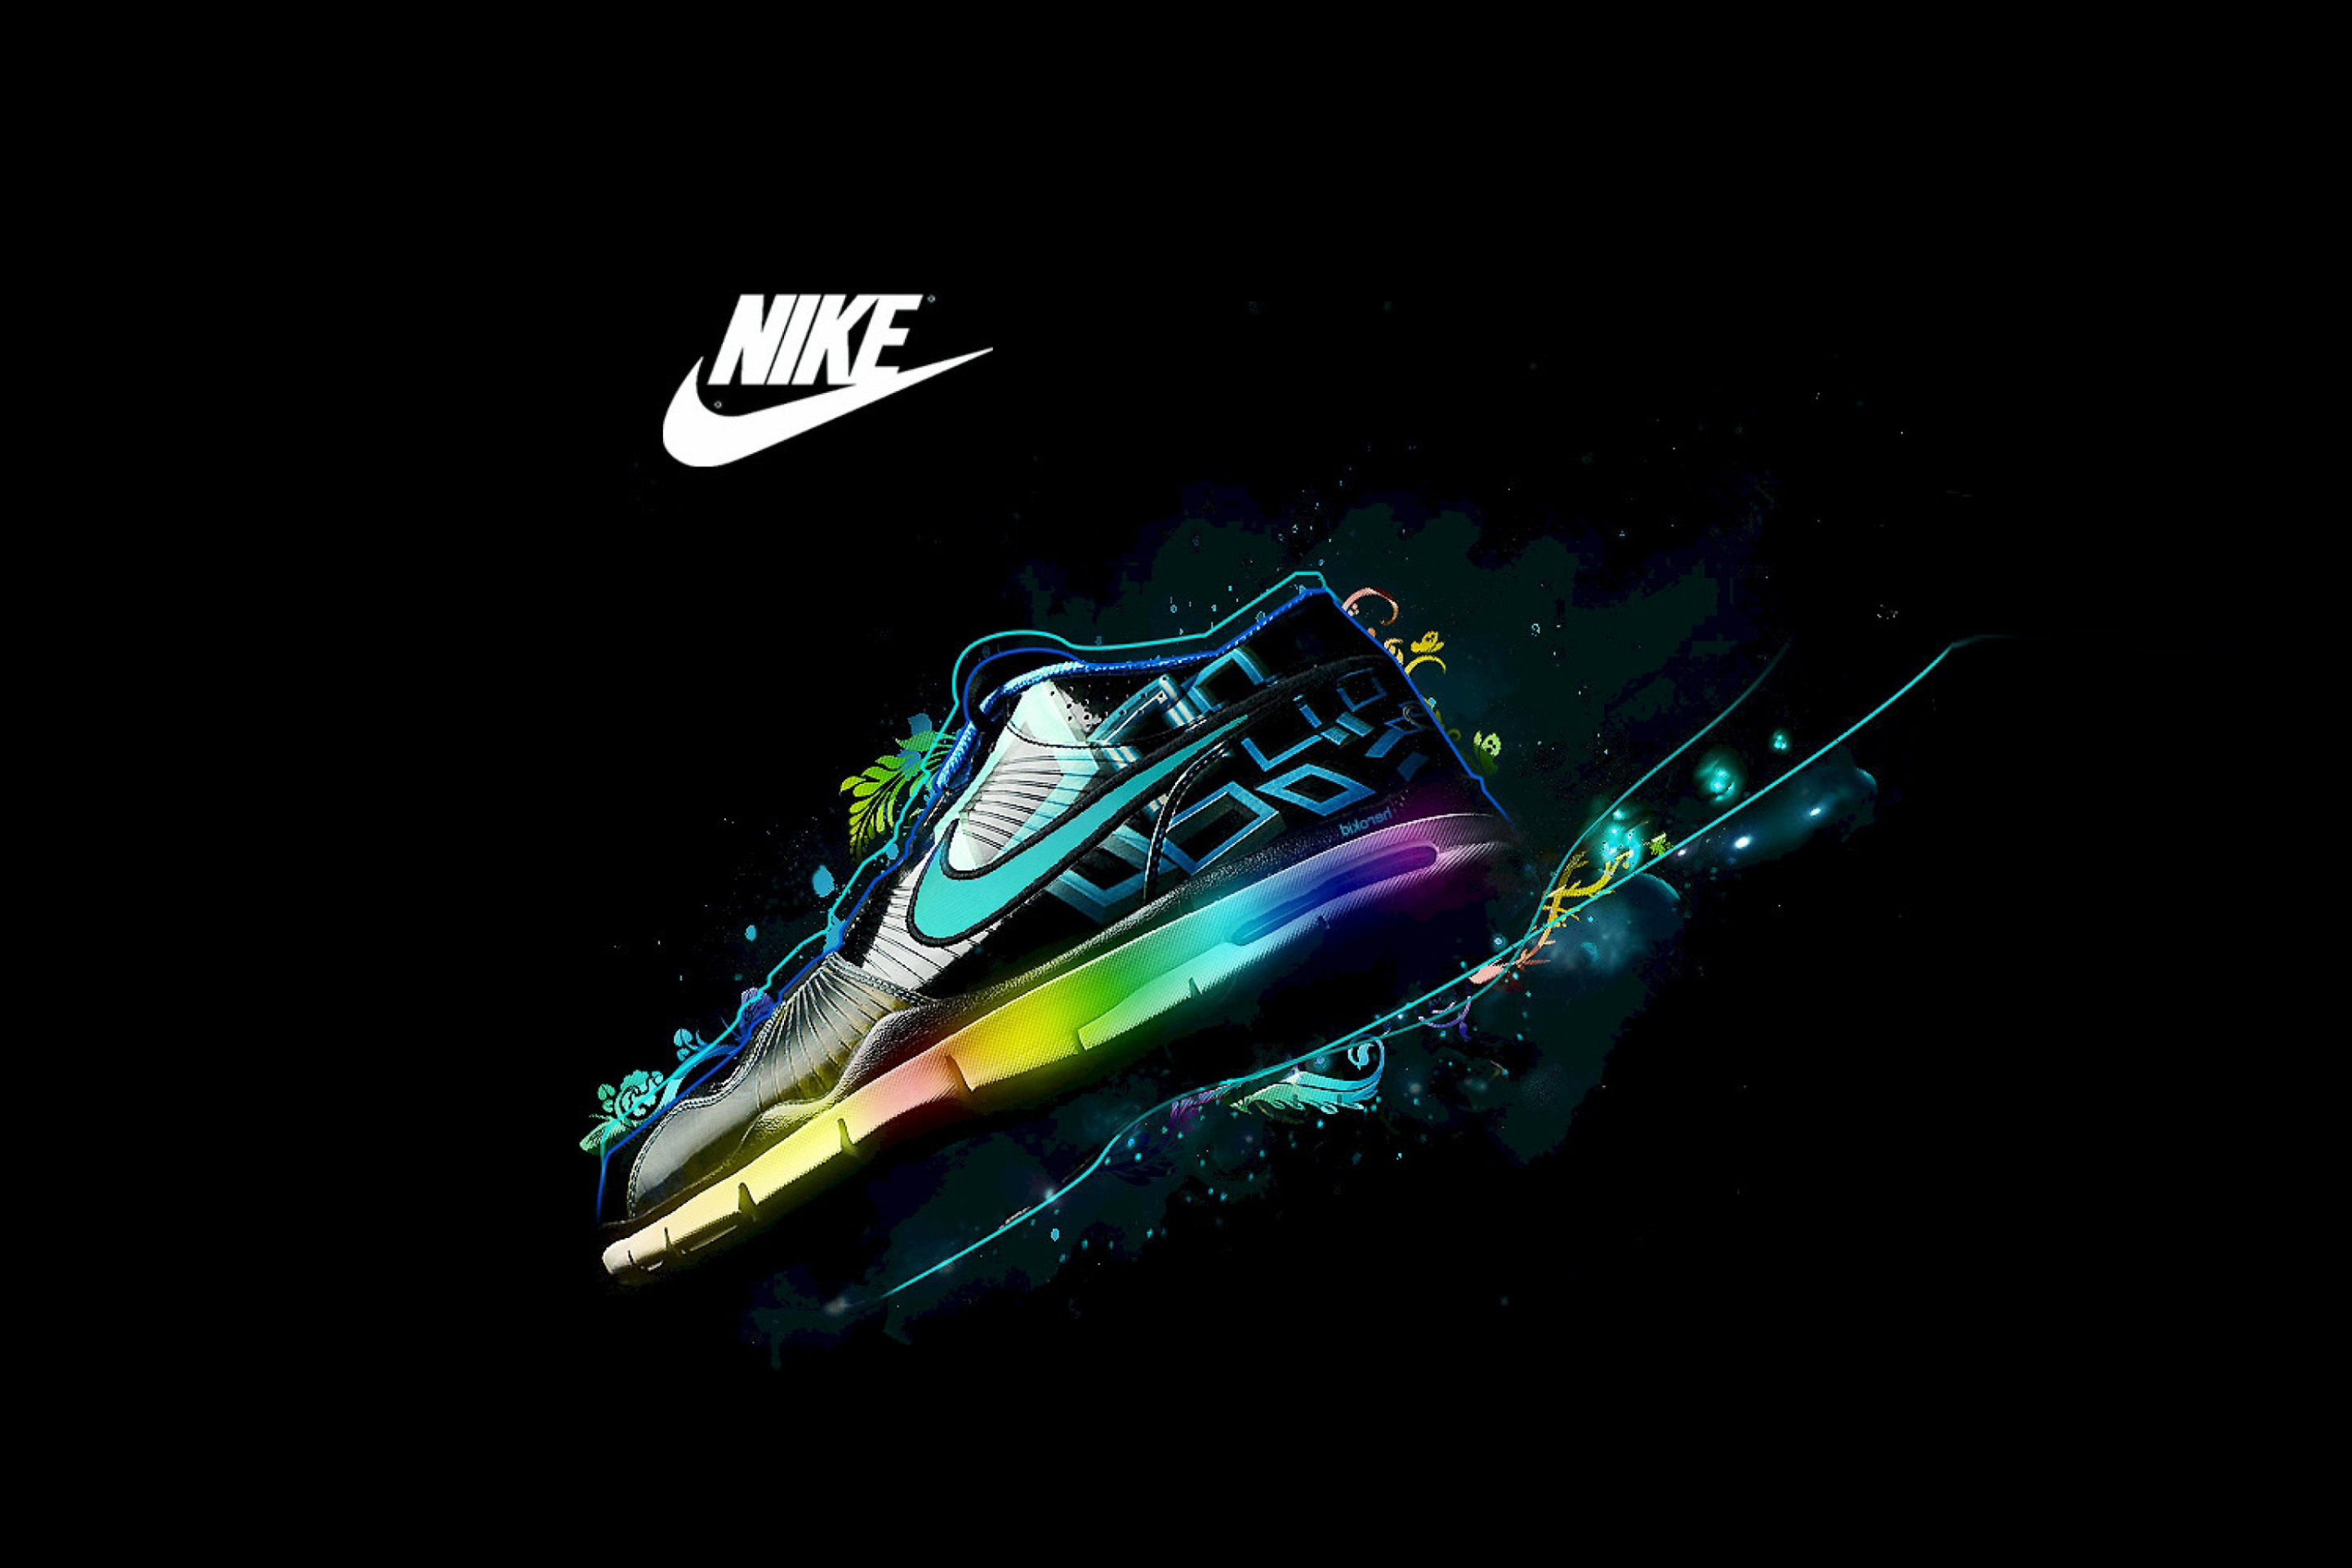 Das Nike Logo and Nike Air Shoes Wallpaper 2880x1920